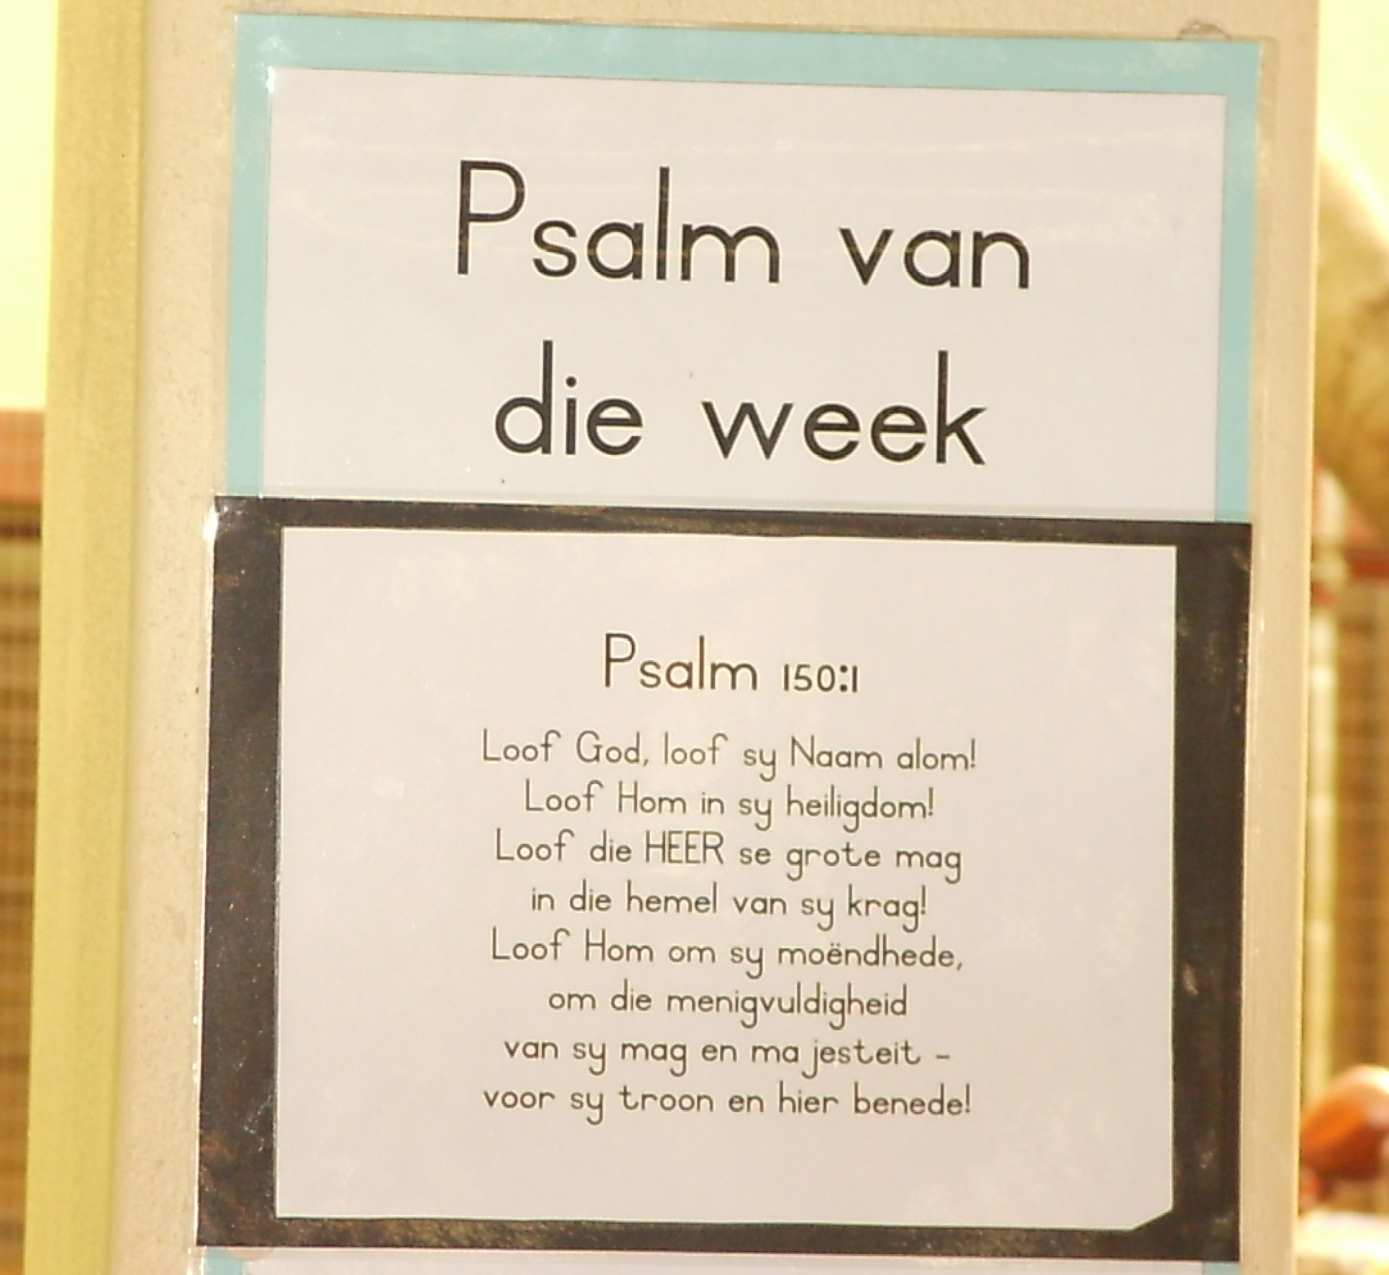 Week 1 Psalm 8: 1 Week 2 Psalm 9: 1 Week 3 Psalm 116: 1 Week 4 Psalm 100: 1 en 4 Week 5 Psalm 105: 1 Week 6 Psalm 105: 5 Week 7 Psalm 25: 2 Week 8 Psalm 84: 2 Week 9 Psalm 23: 1 Week 10 Psalm 45: 1